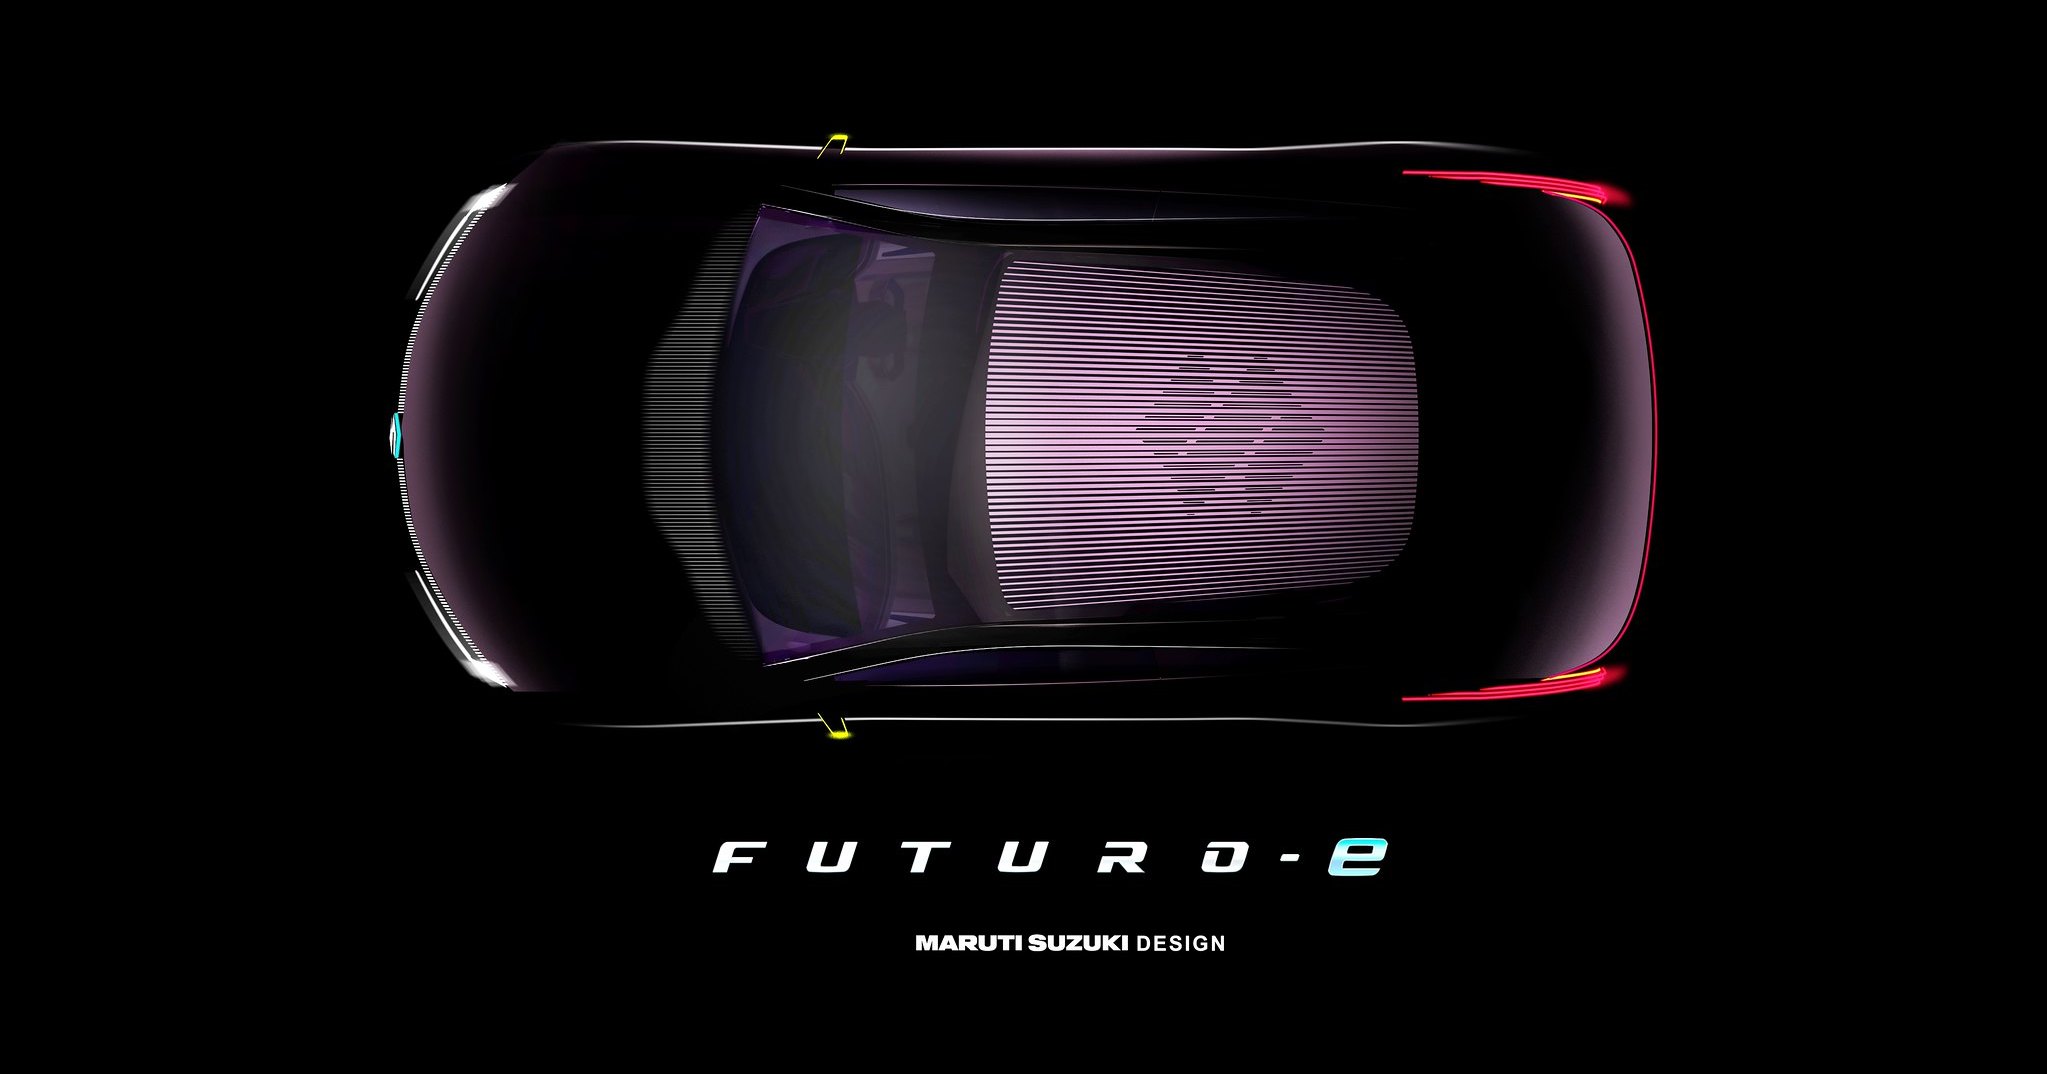 Suzuki показала футуристичный электрокар Futuro-e